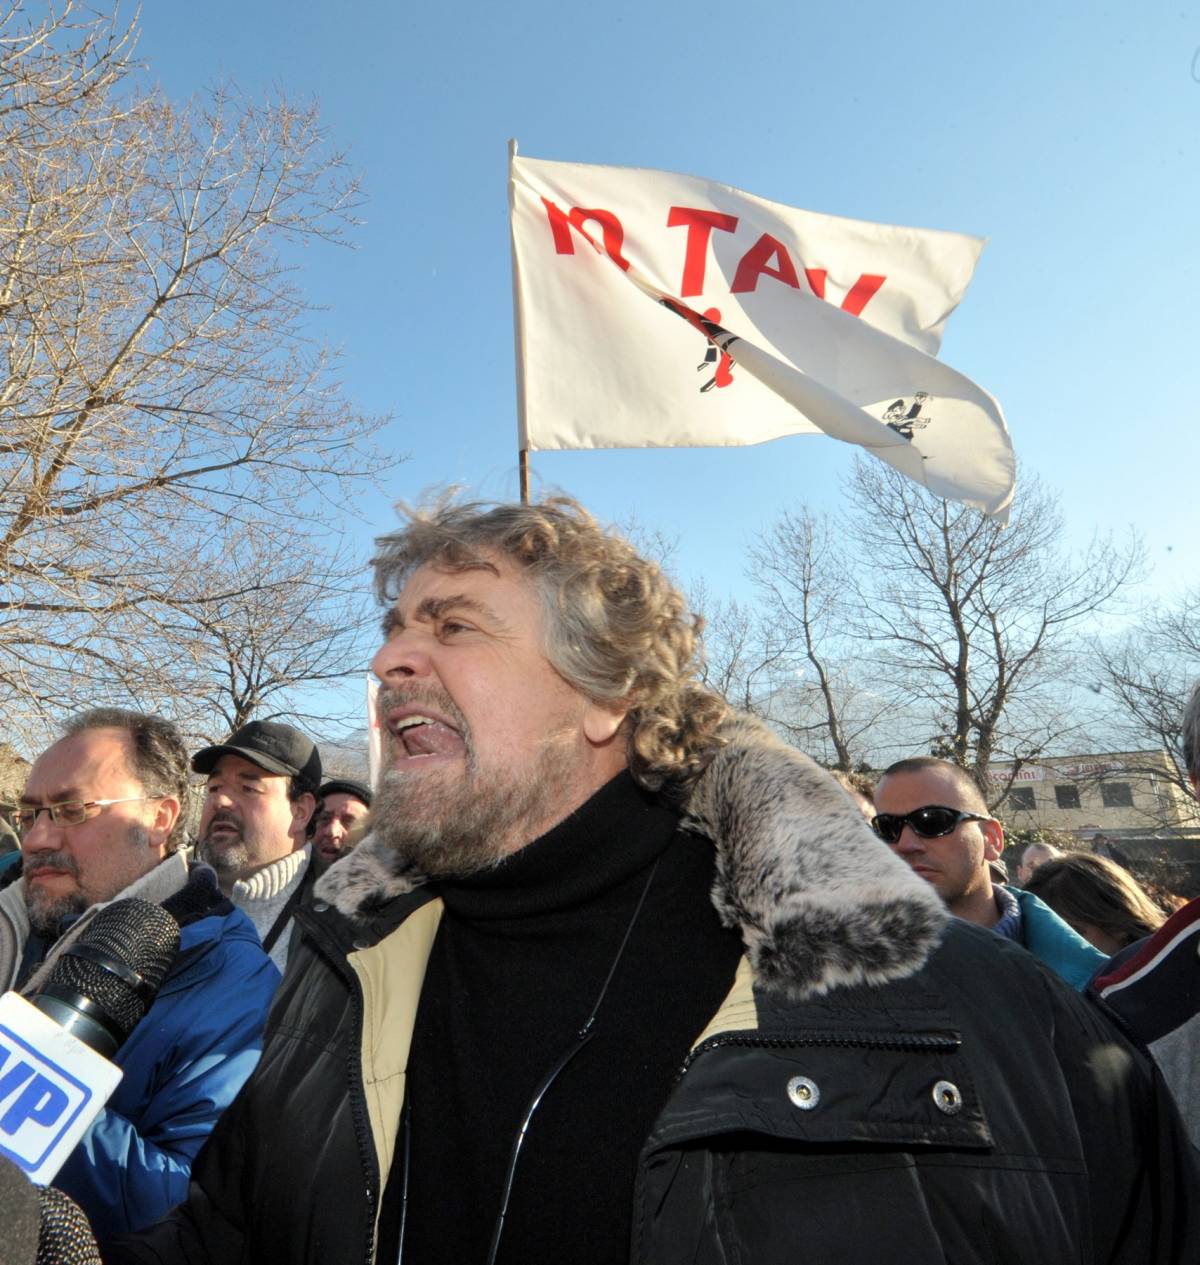 L'ultima di Grillo: "Tav crimine contro umanità"